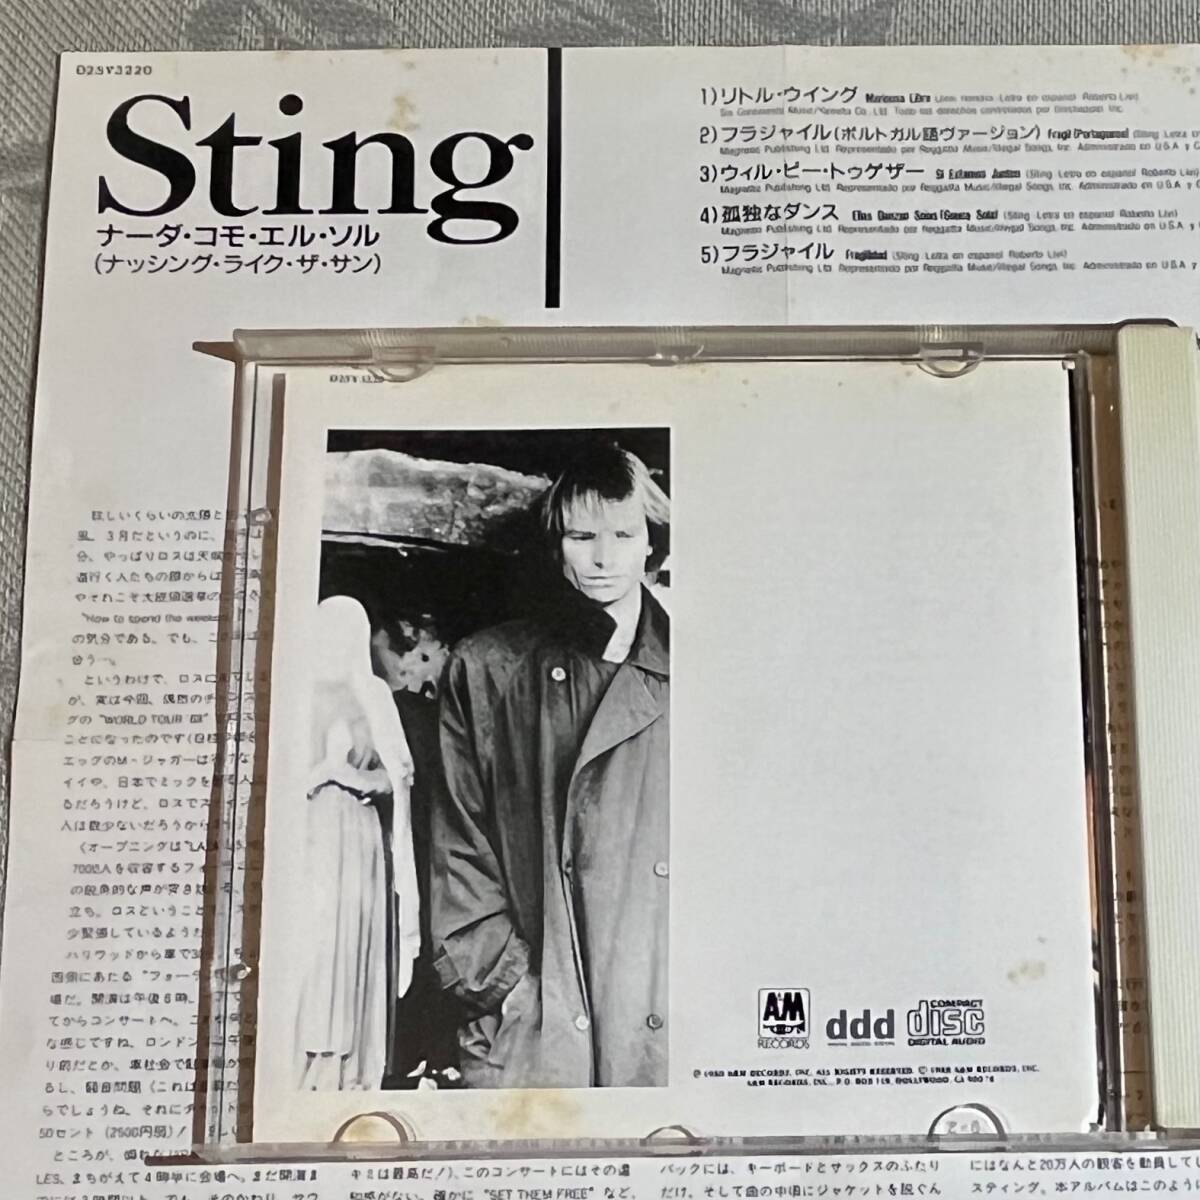 【国内盤CD】Sting / ...Nada como el Sol (Nothing Like the Sun) スティング / ナーダ・コモ・エル・ソル（スペイン語 ポルトガル語）_何箇所かにシミあり